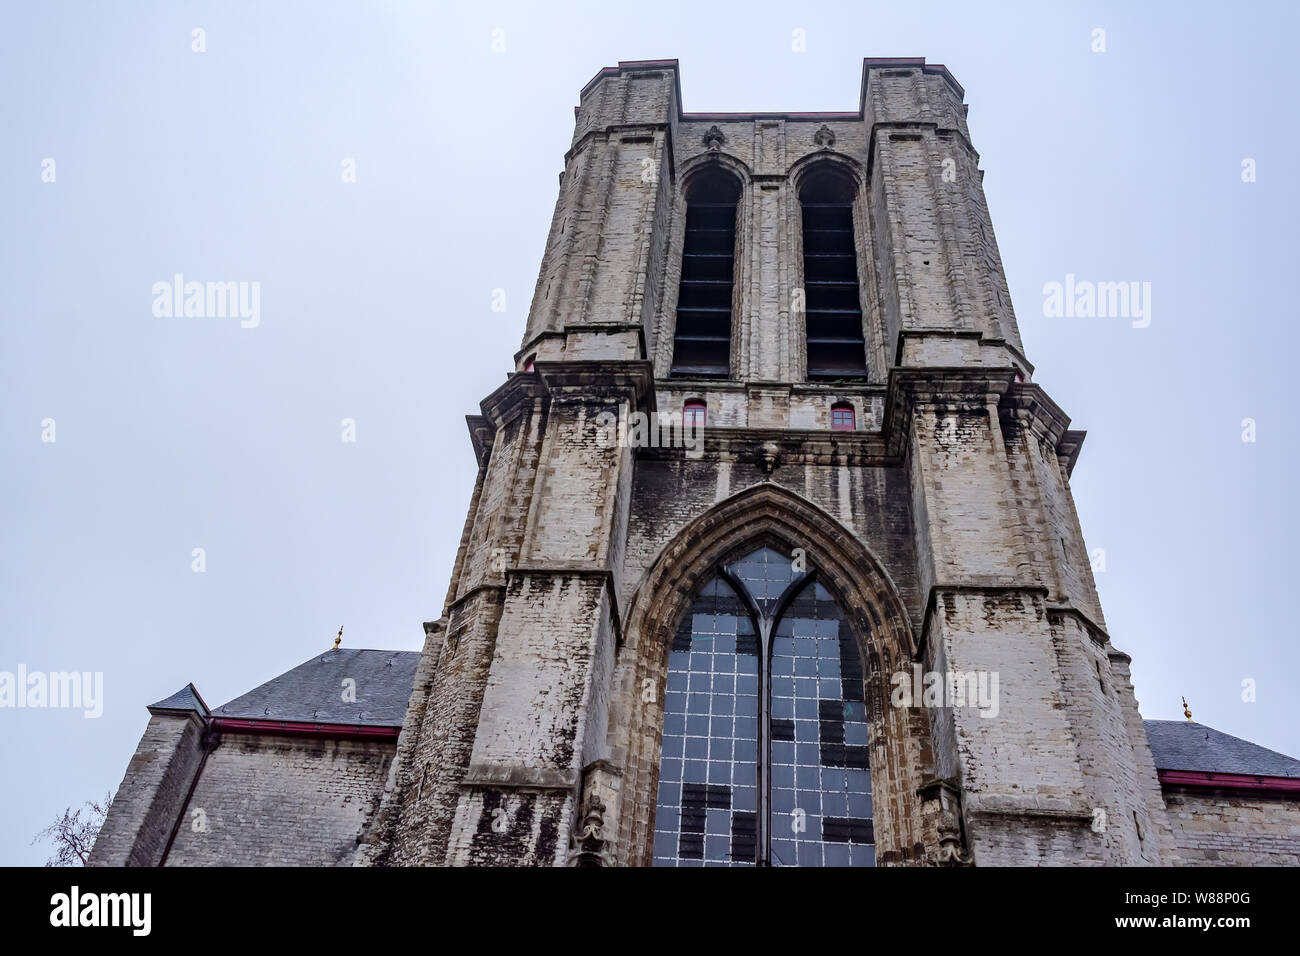 L'incompiuta torre occidentale del borgo medievale di Saint Michael's chiesa costruita in stile tardo gotico a Gand, Belgio. Facciata di una chiesa cattolica romana. Foto Stock